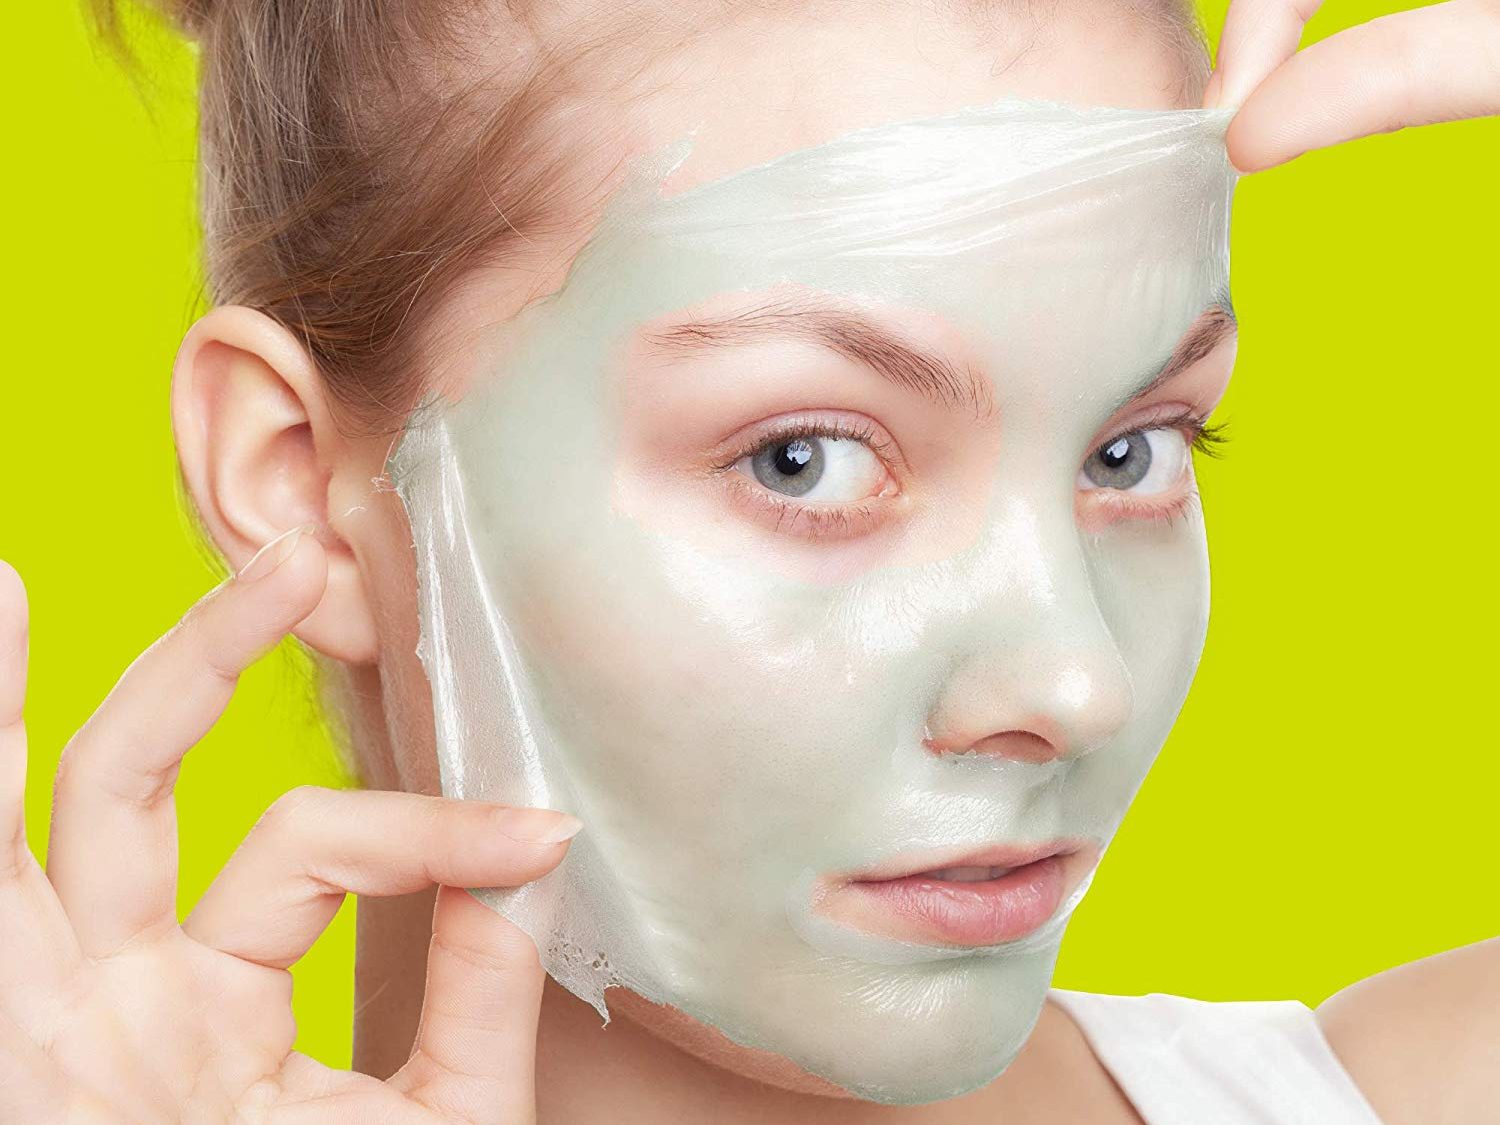 Тонизирование кожи лица. Пилинг ТСА (трихлоруксусной кислотой). Что будет после маски